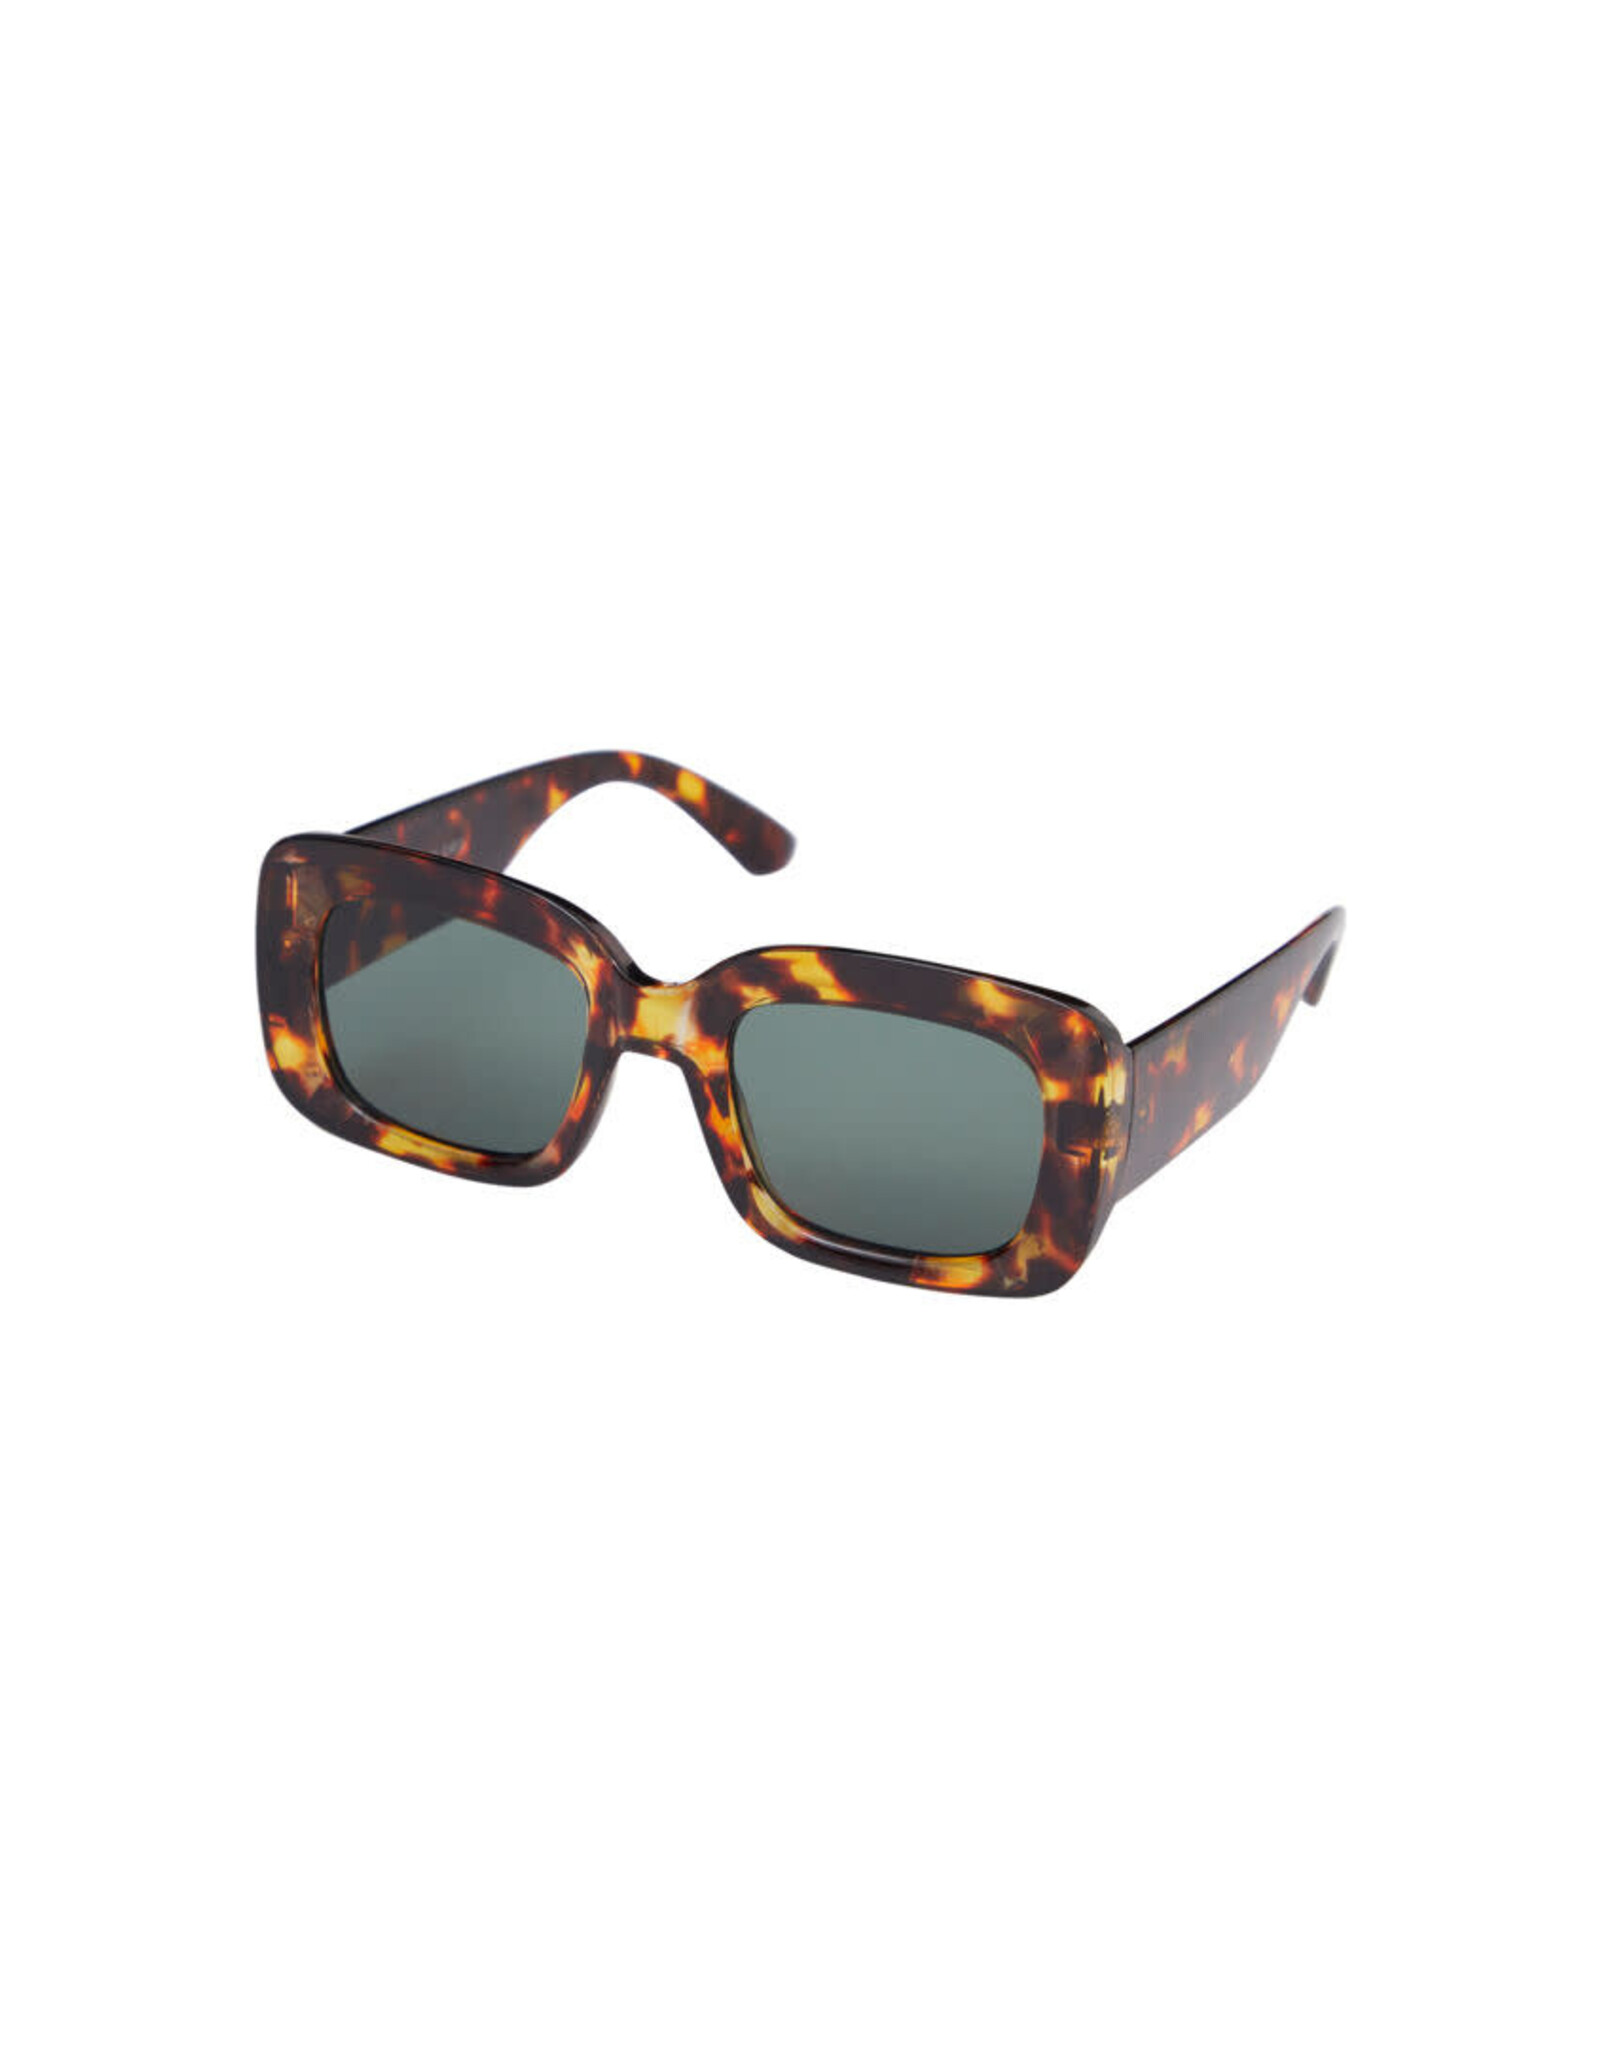 ICHI ICHI - Estina sunglasses (Tortoise shell)